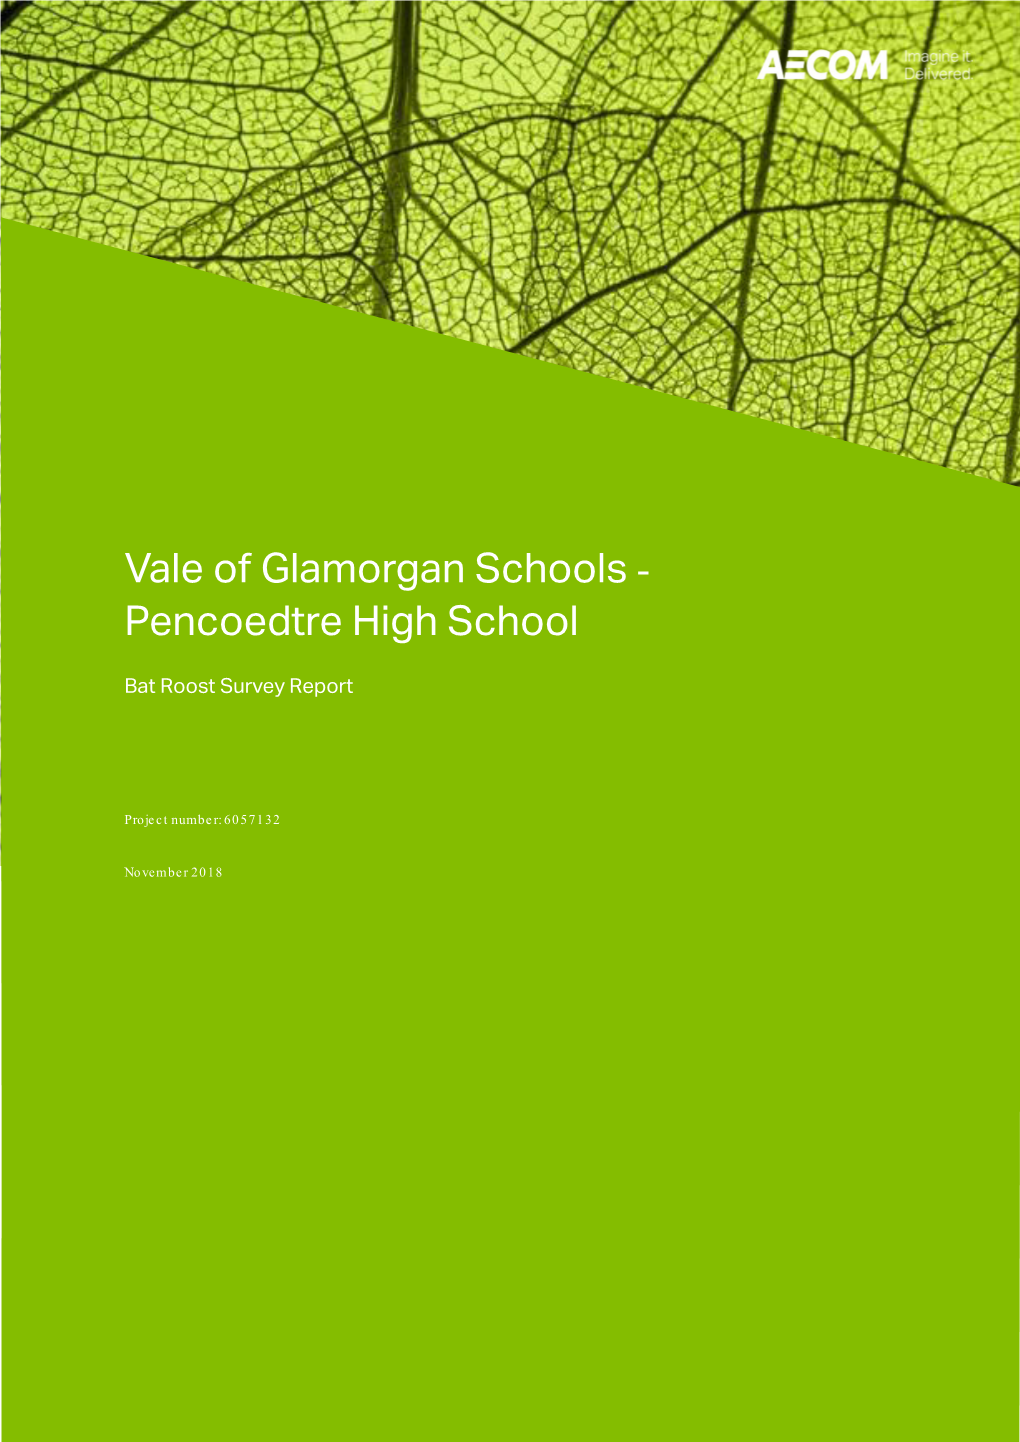 Vale of Glamorgan Schools - Pencoedtre High School